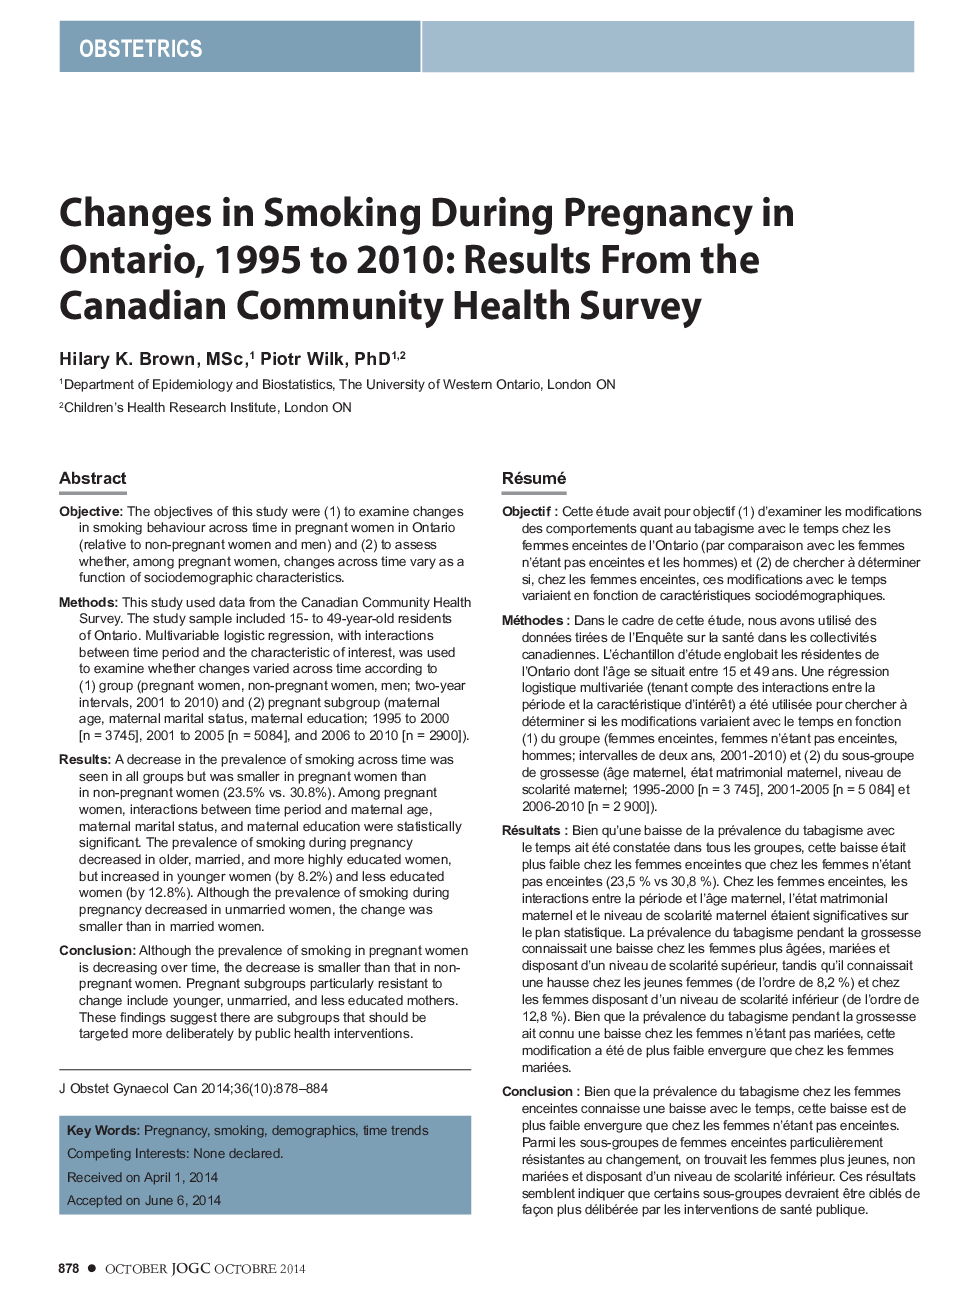 تغییرات در سیگار کشیدن در هنگام بارداری در انتاریو، 1995 تا 2010: نتایج از نظر بهداشت جامعه کانادایی 